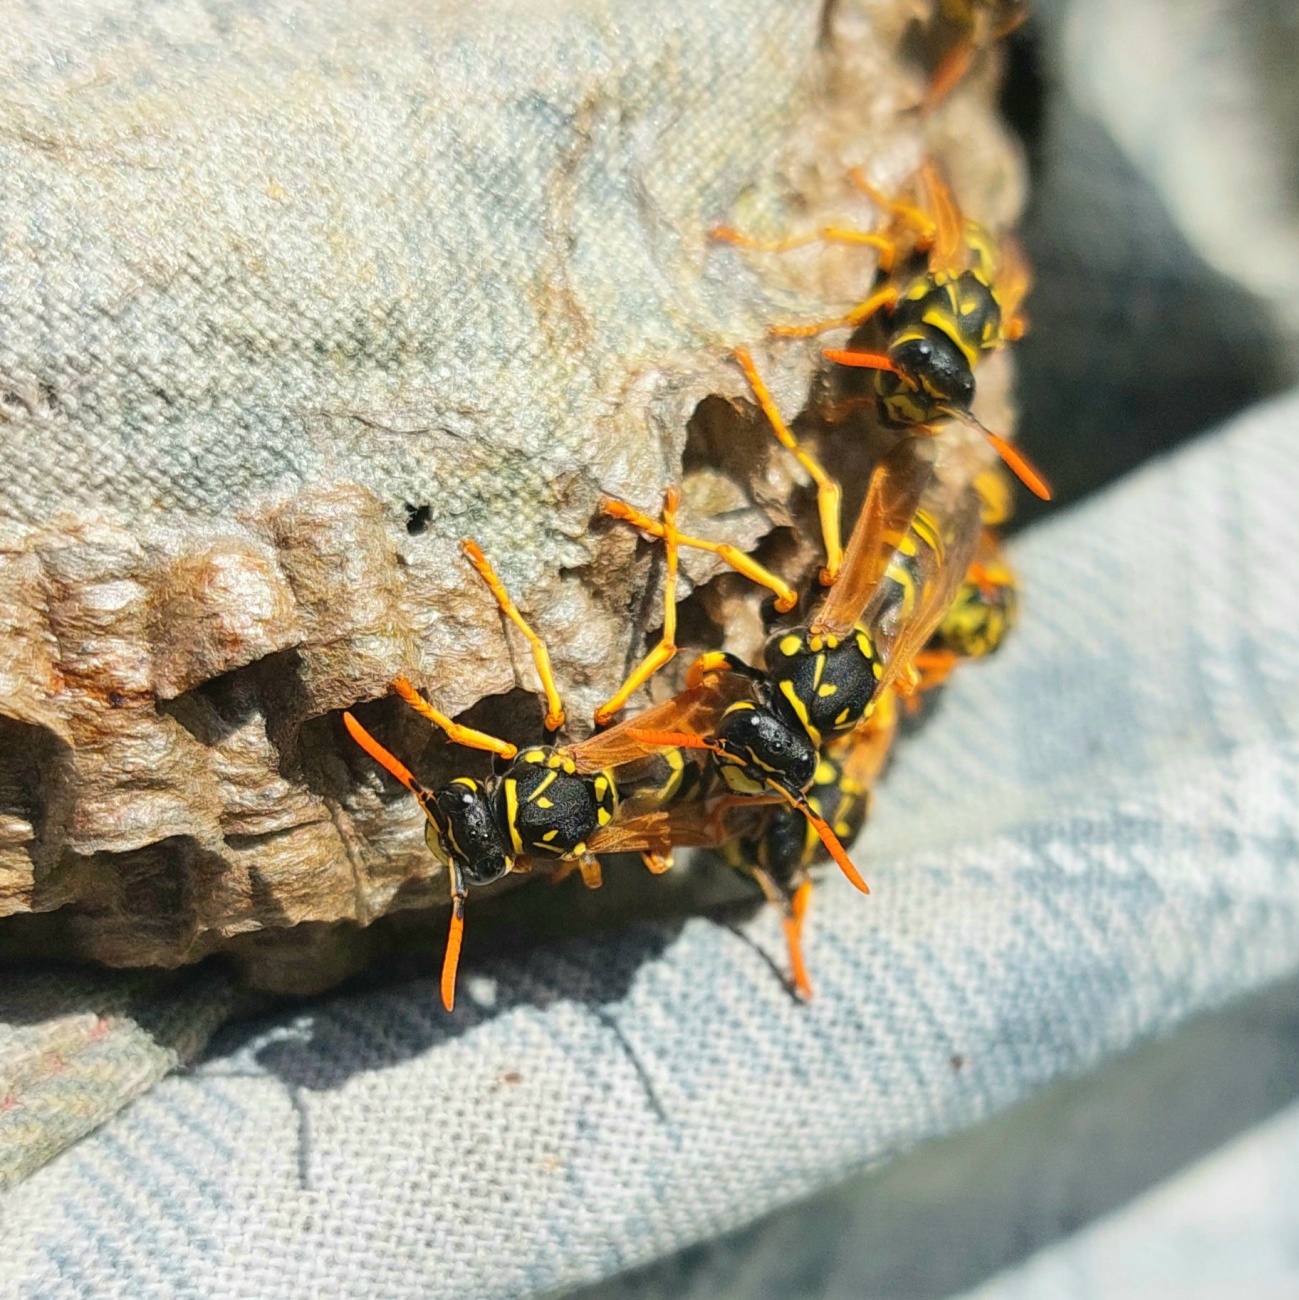 Foto: Martin Zehrer - Wespen bauen im Herbst an einem Nest...<br />
Etwas gelähmt von den morgendlichen Temperaturen.  